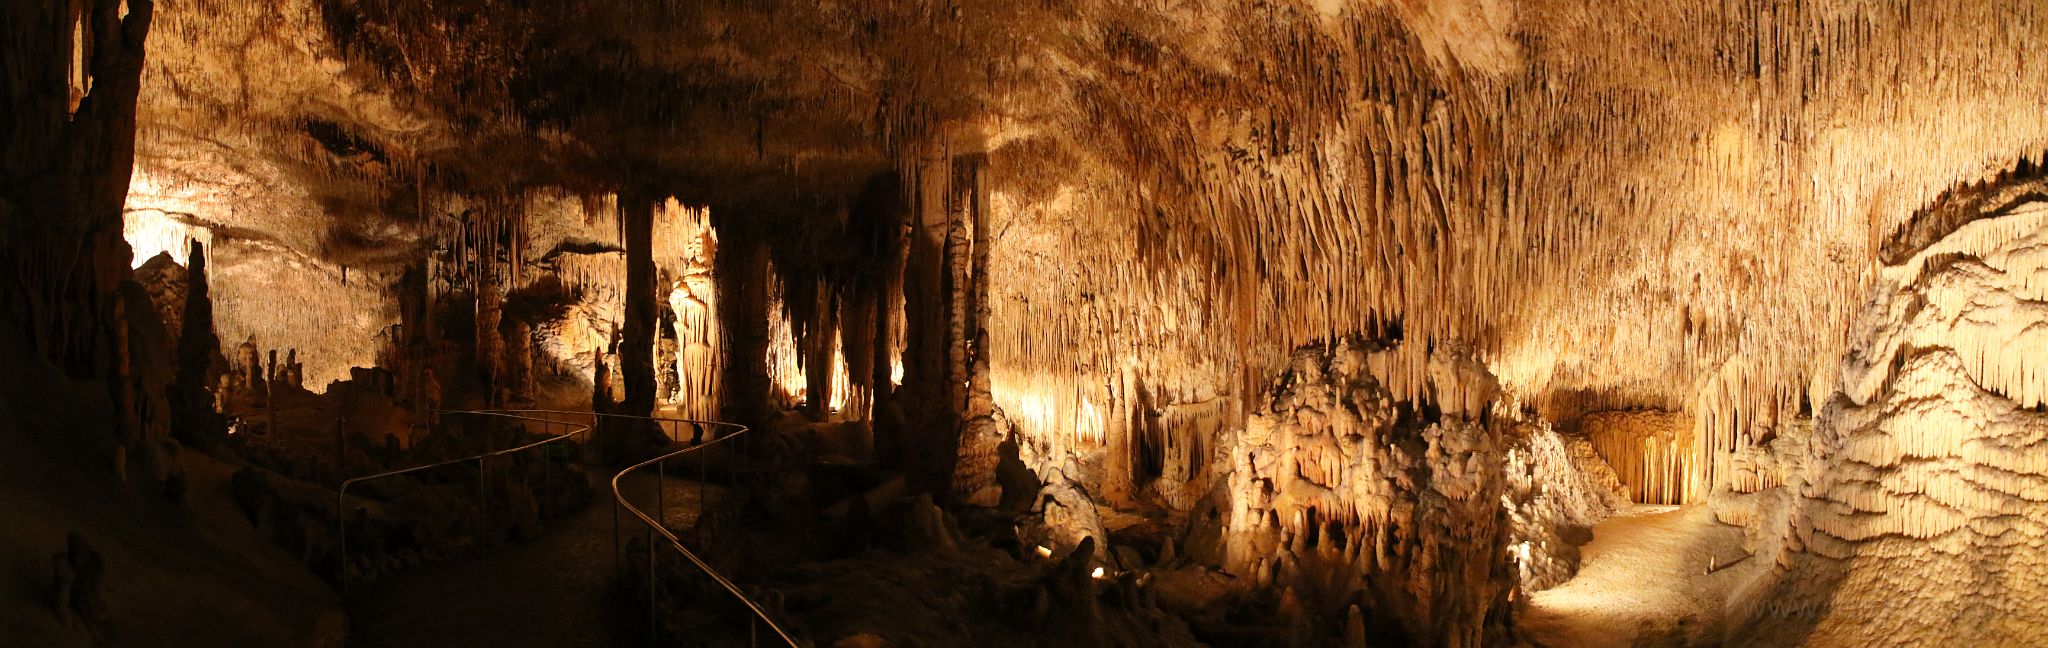 20151028-drachenhoehle-tropfstein.jpg - Estalactites / Stalaktiten in der Cuevas Drach / Drachenhöhle, Mallorca